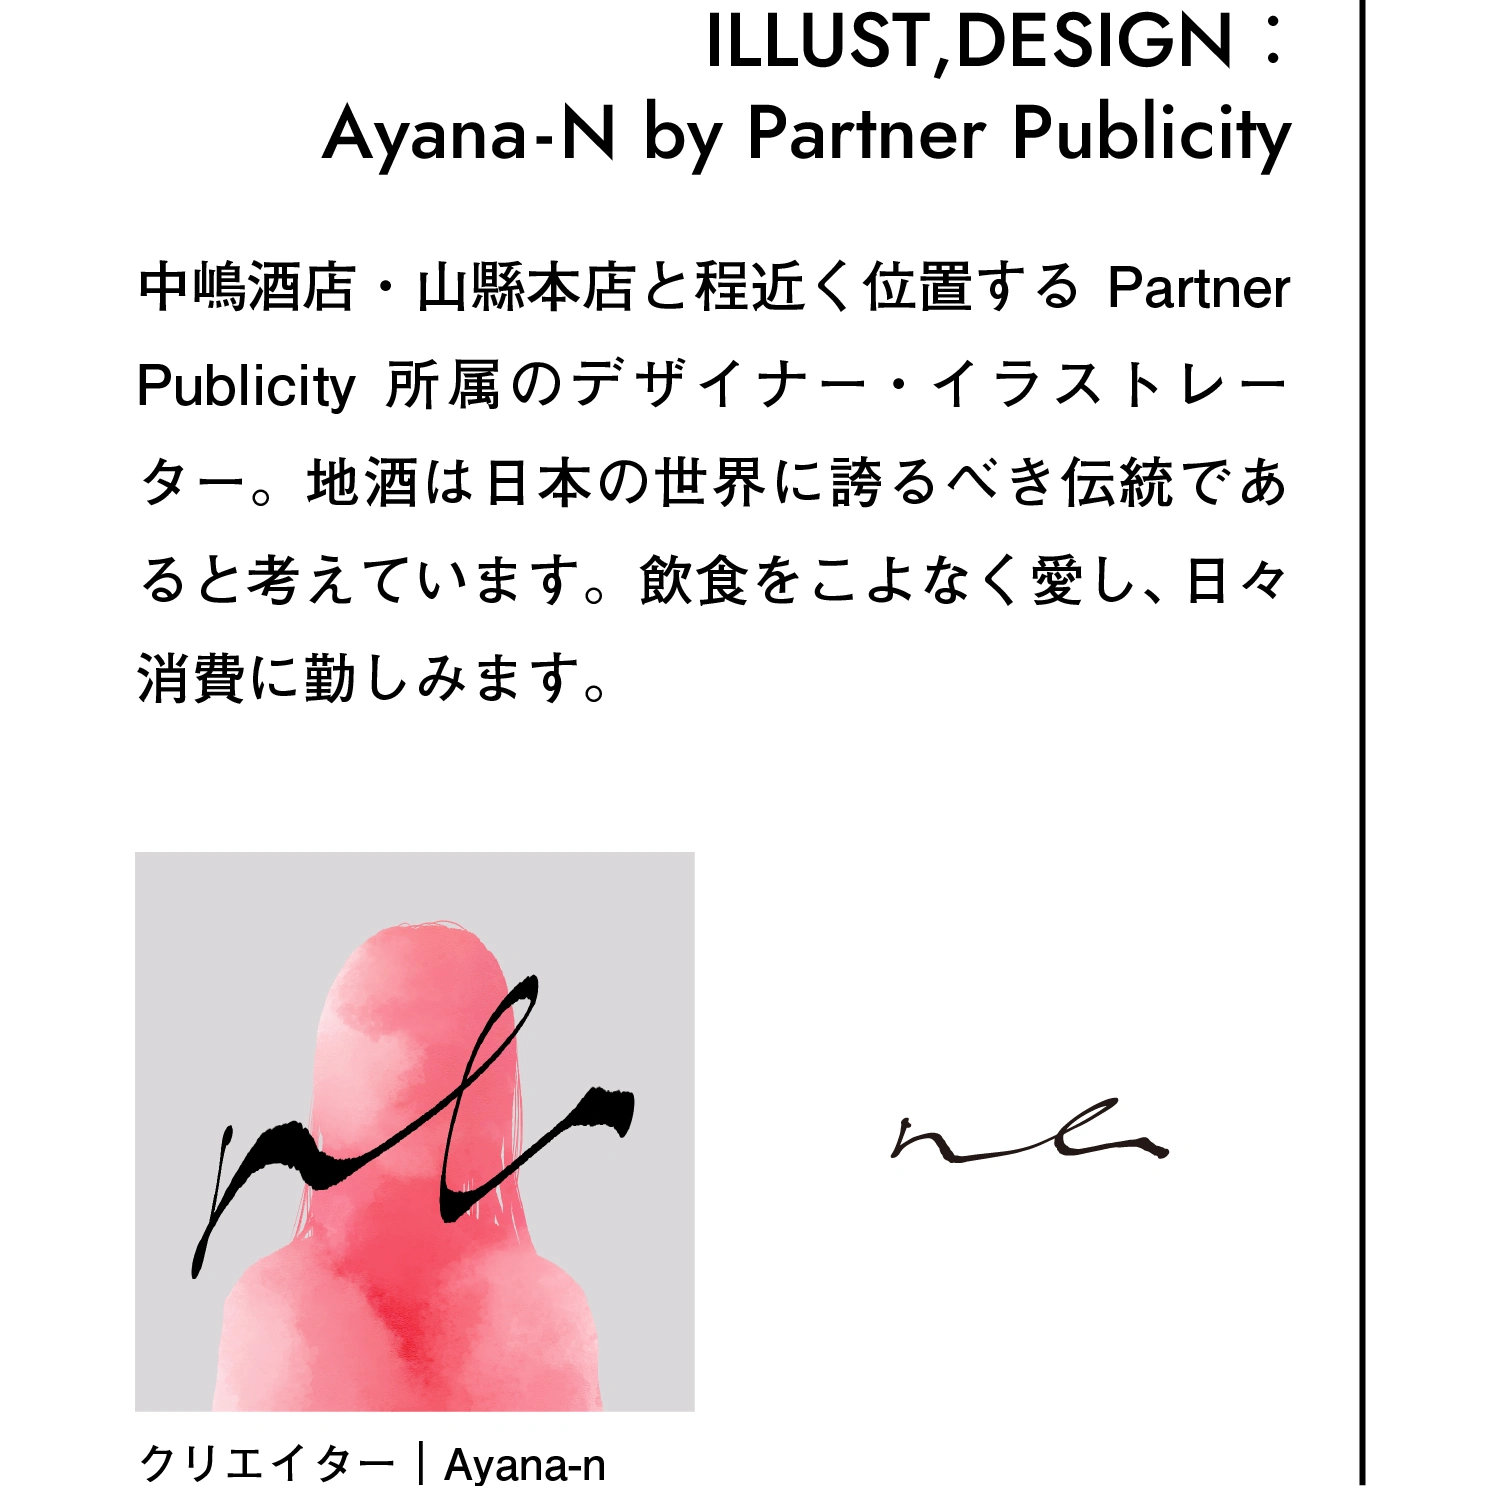 イラスト・デザイン：Ayana-N by Partner Publicity